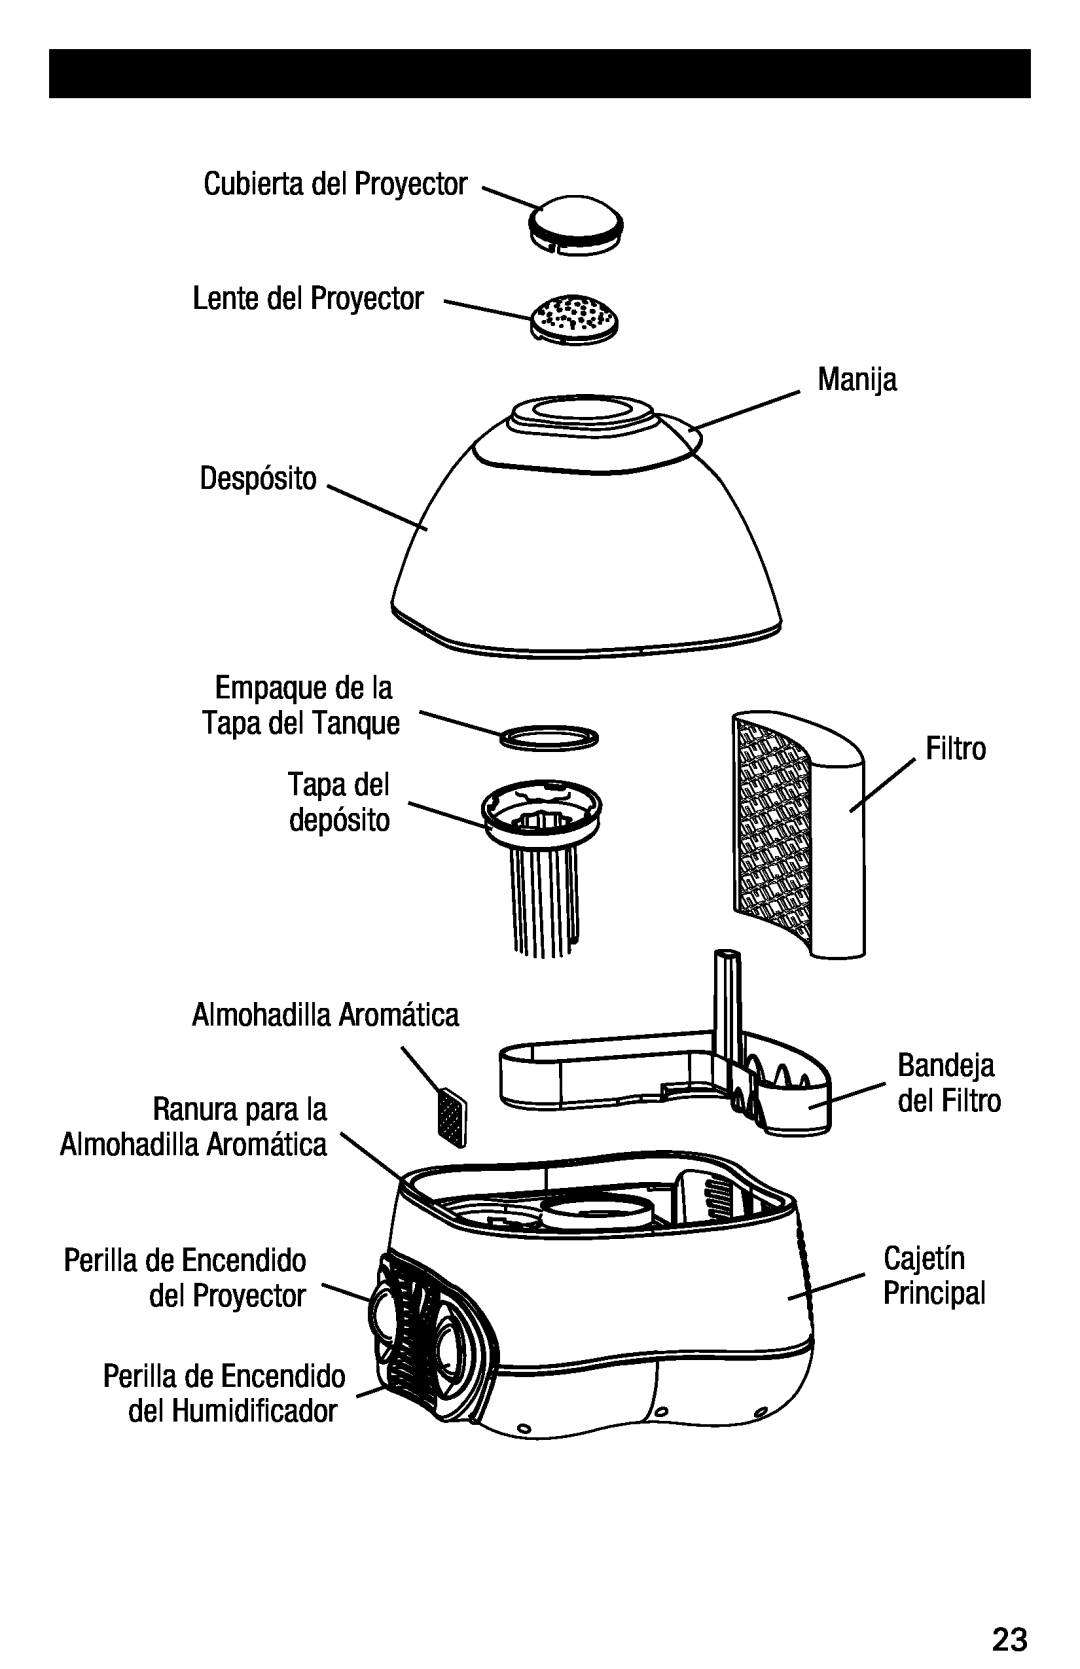 Vicks V3700 manual Cubierta del Proyector Lente del Proyector Despósito Empaque de la, Tapa del Tanque, Manija Filtro 